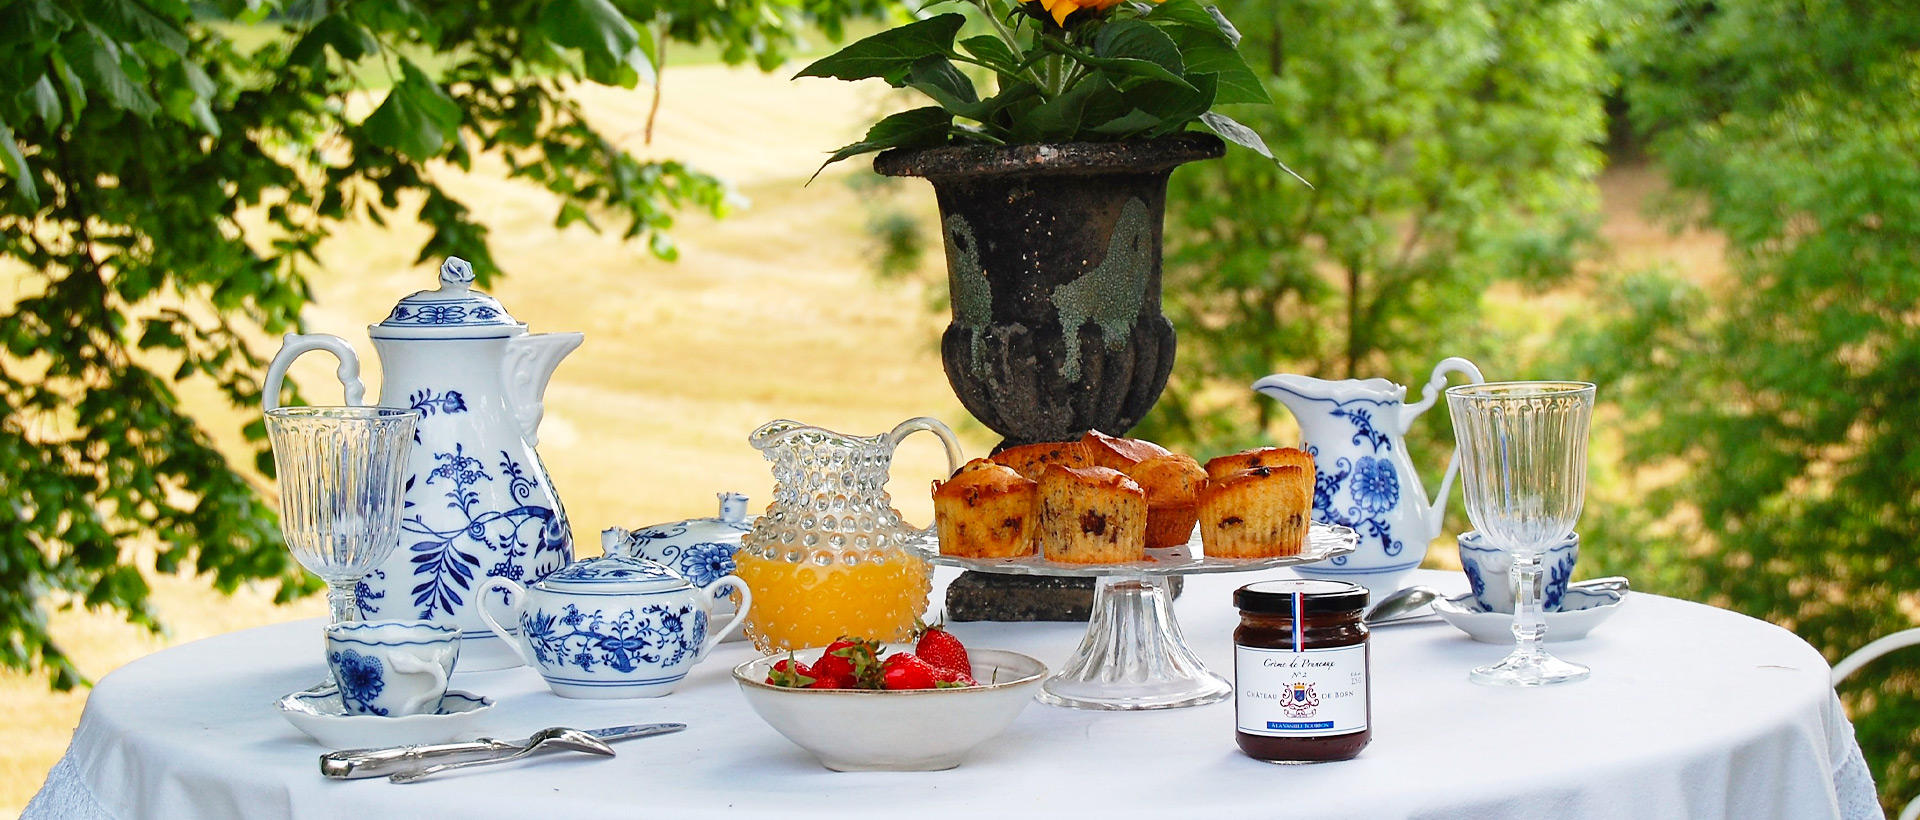 slider-2-petit déjeuner nature sur table vaisselle bleue raffinée confiture et produits locaux